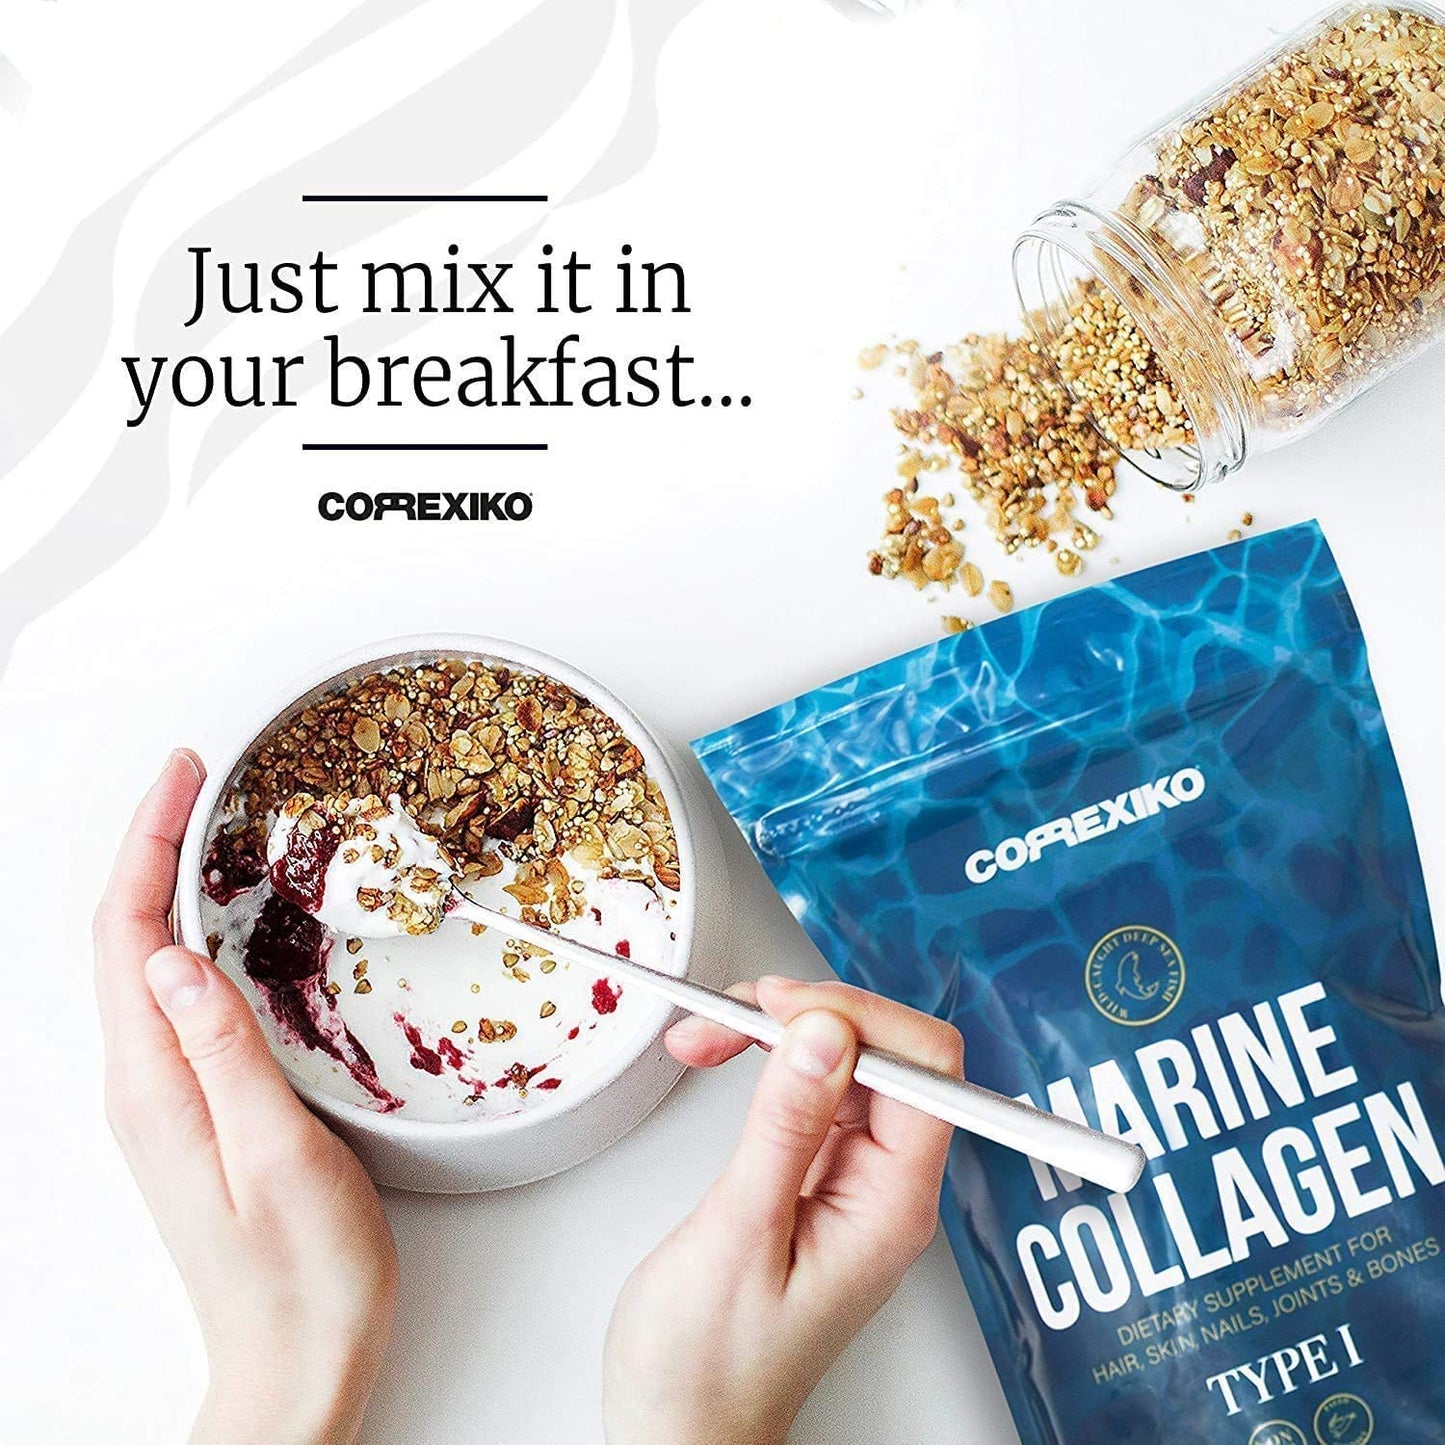 CORREXIKO Marine Collagen Capsules